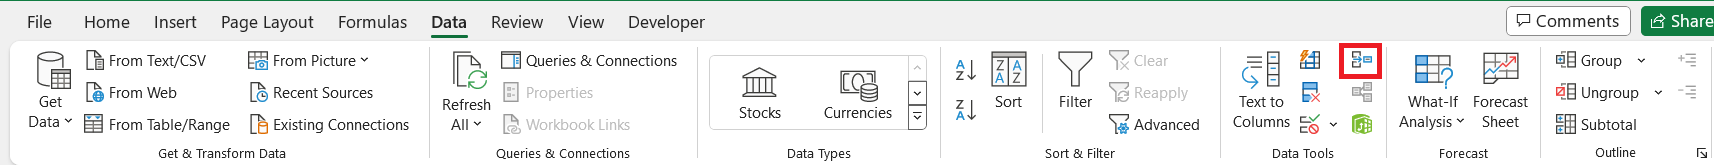 Merge Multiple Excel Files